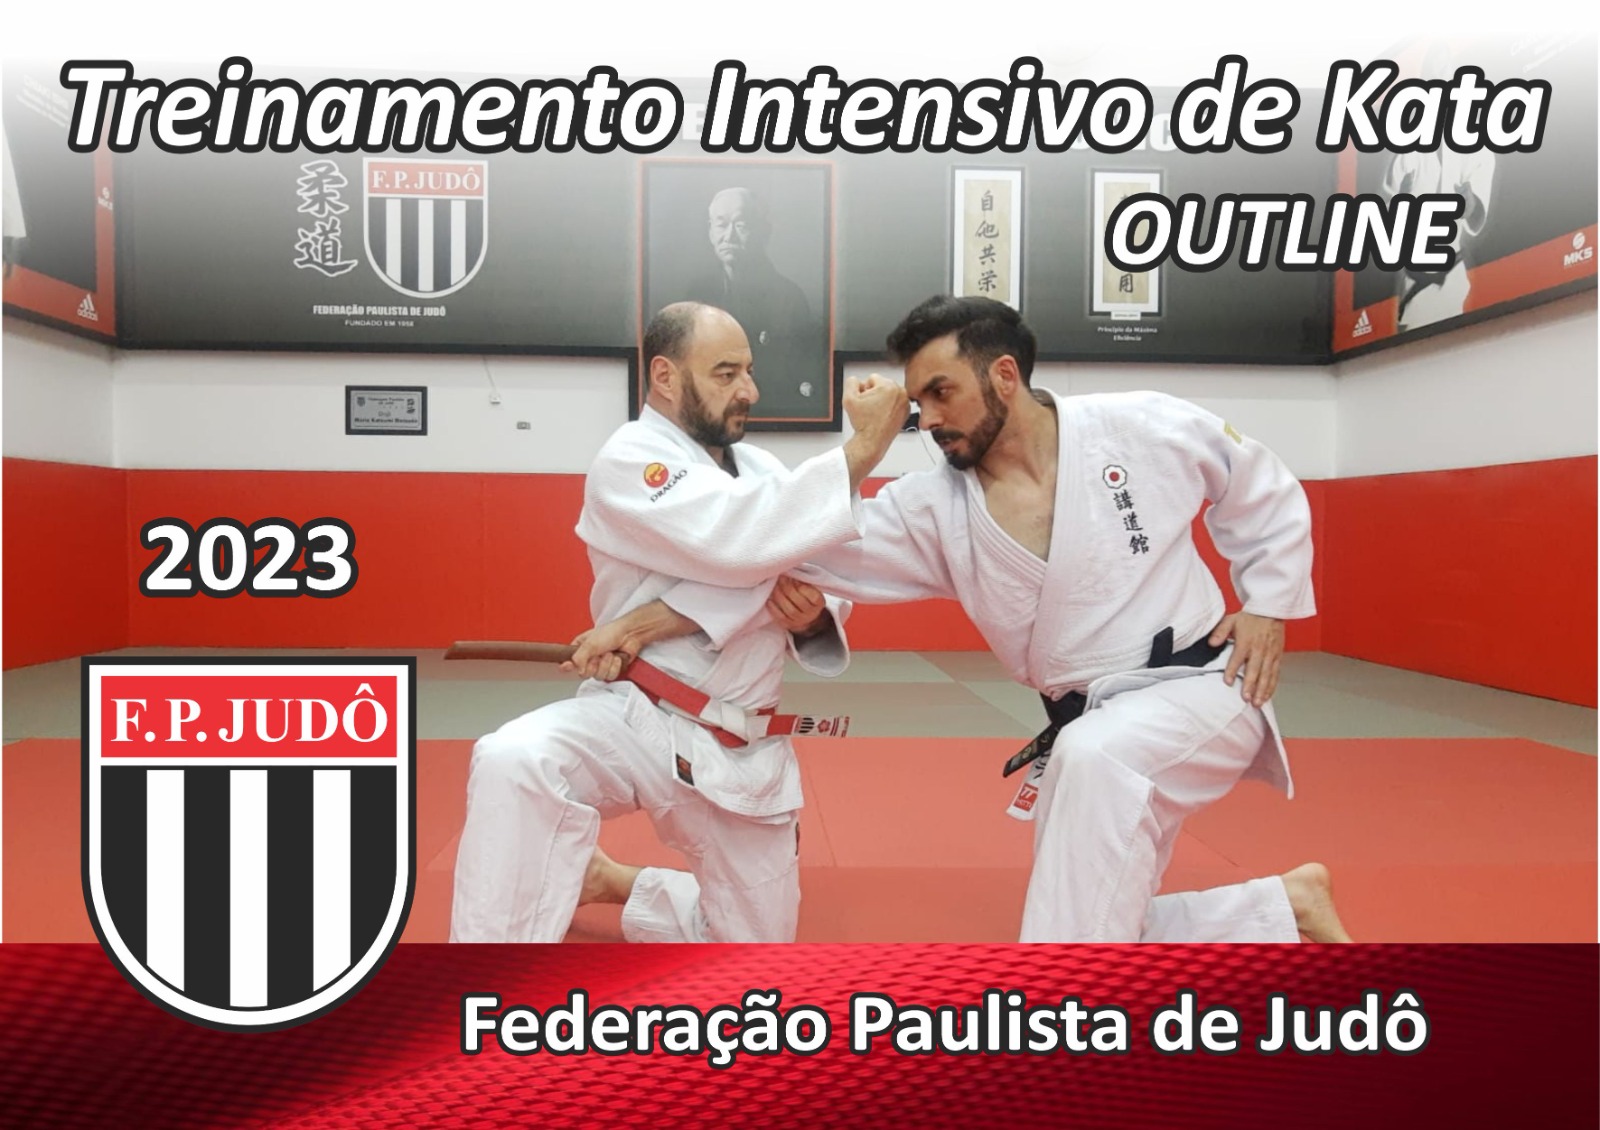 Outline Copa São Paulo – Aspirante - FPJ - Federação Paulista de Judô